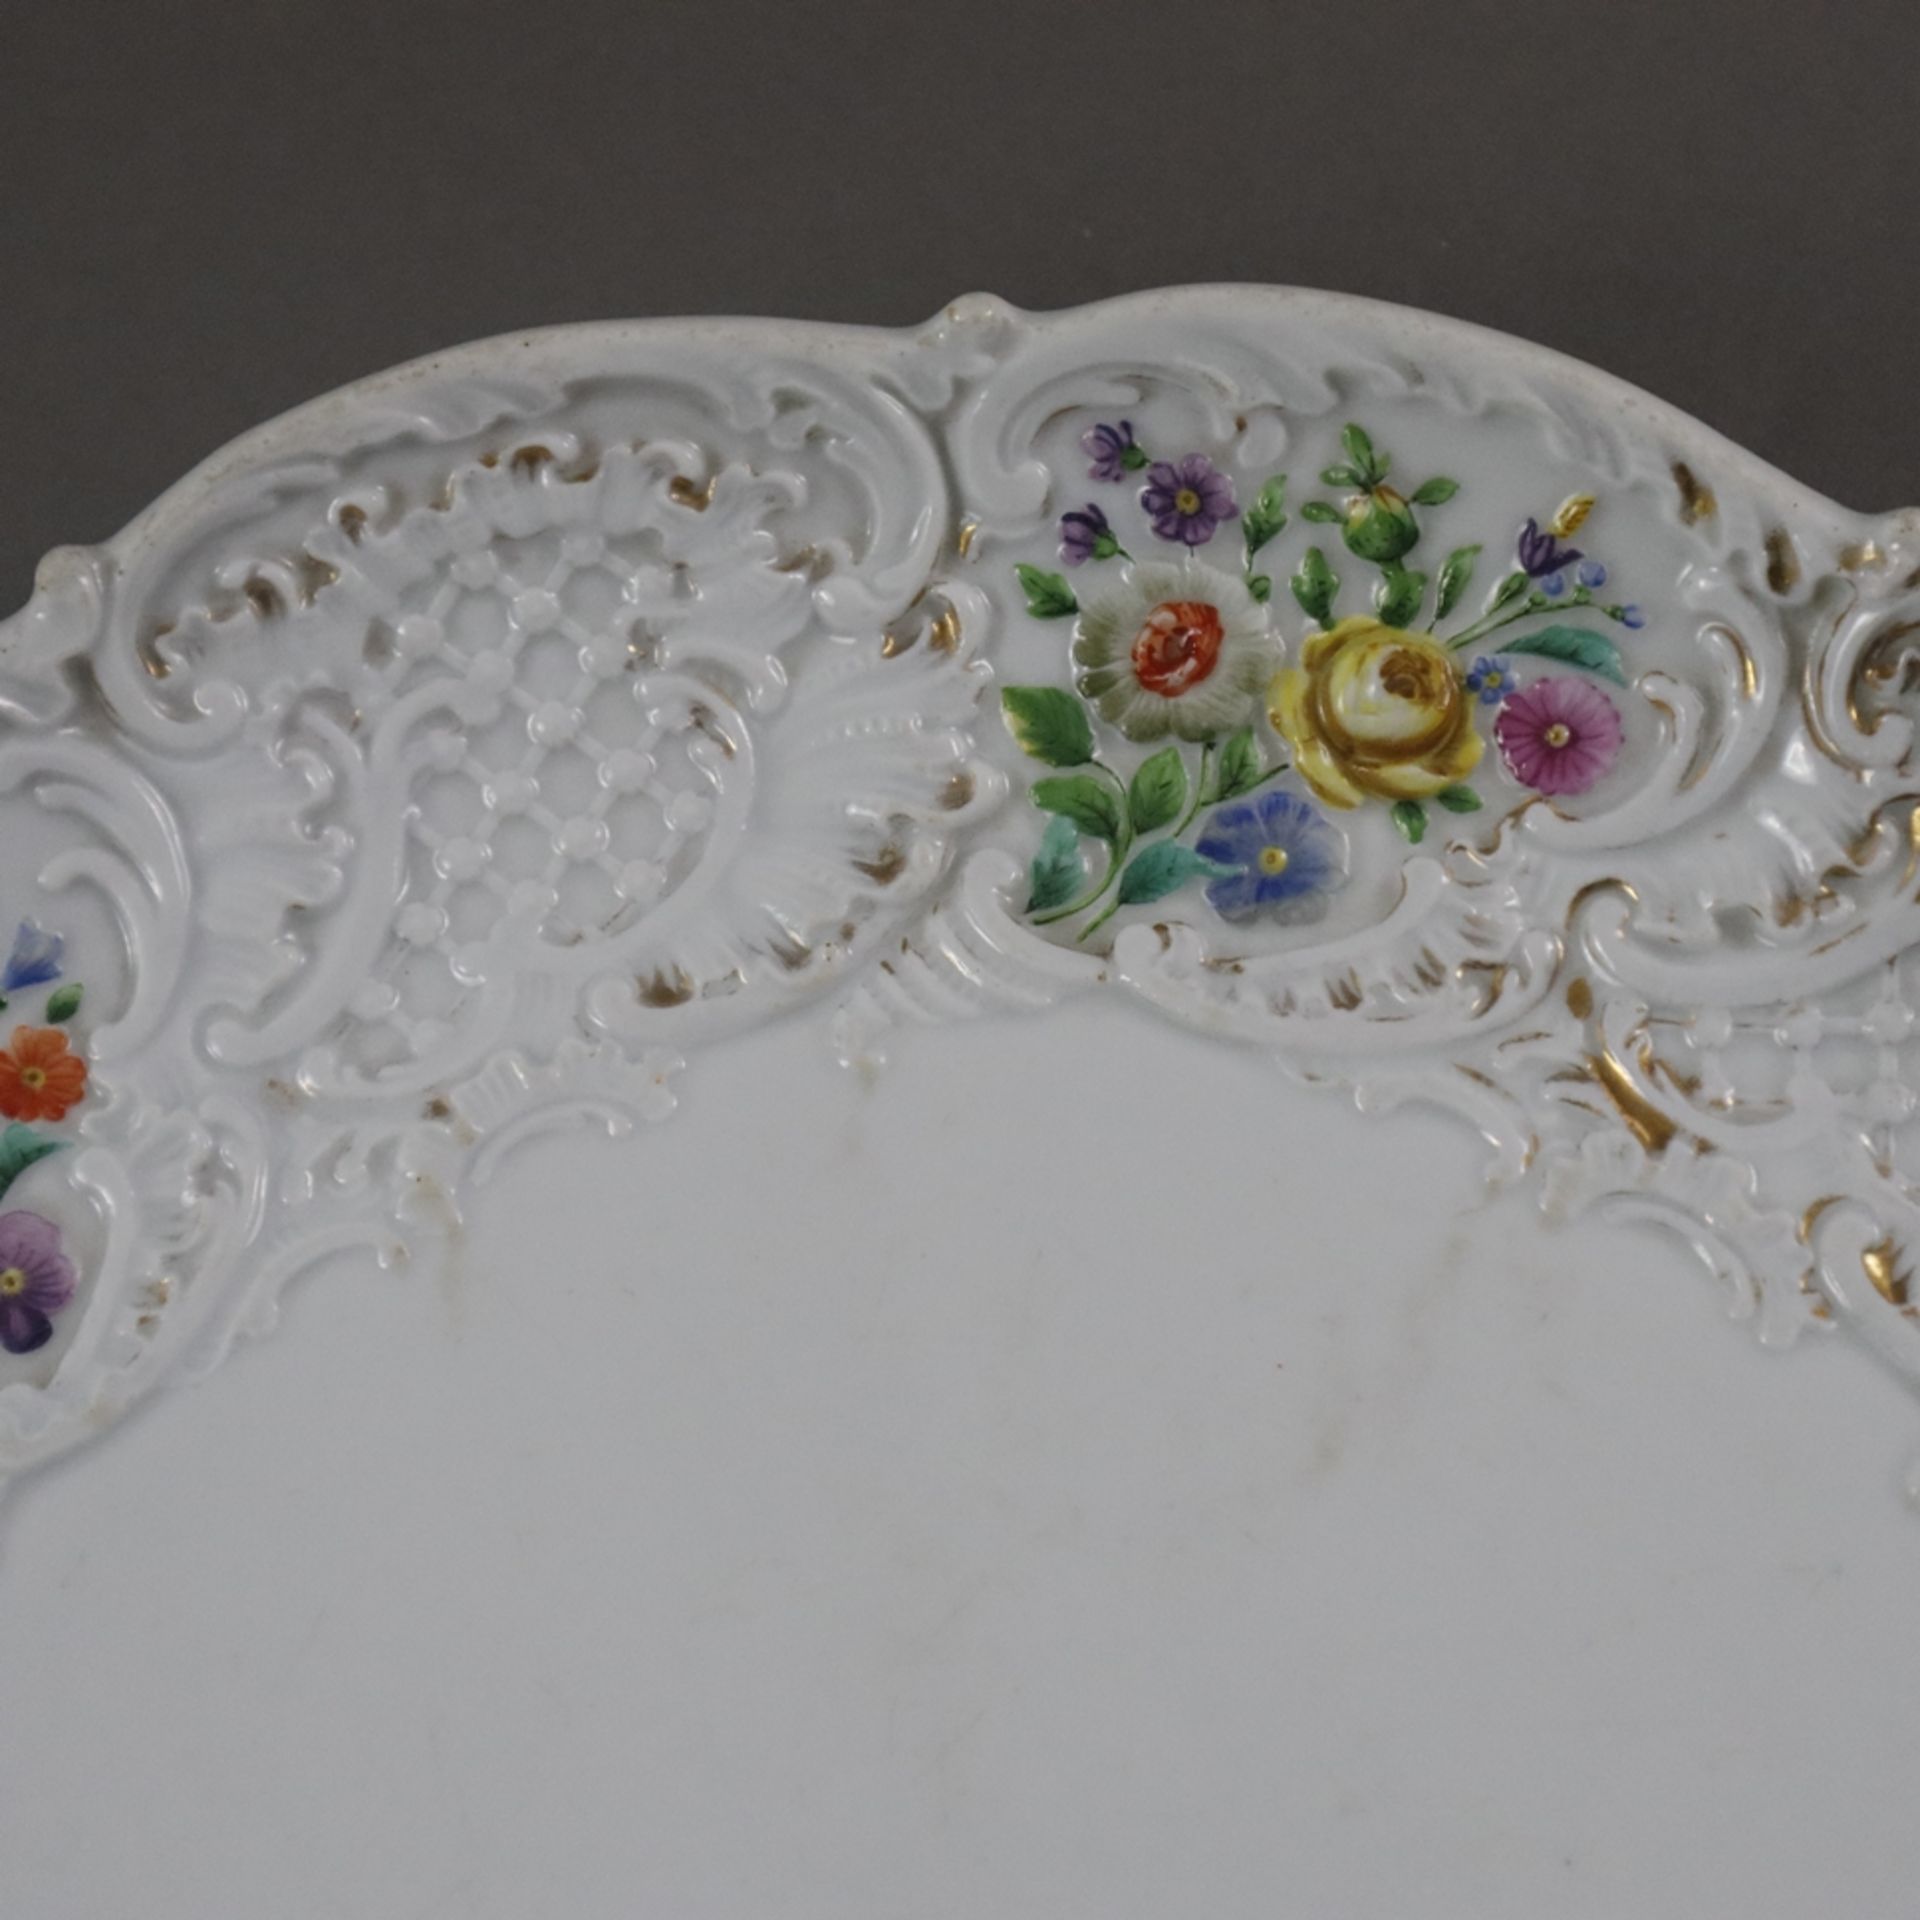 Prunkteller - Meissen, 19. Jh., Porzellan, Rand reich reliefiert mit Blumen- und Gitterrocaille-Orn - Bild 2 aus 7